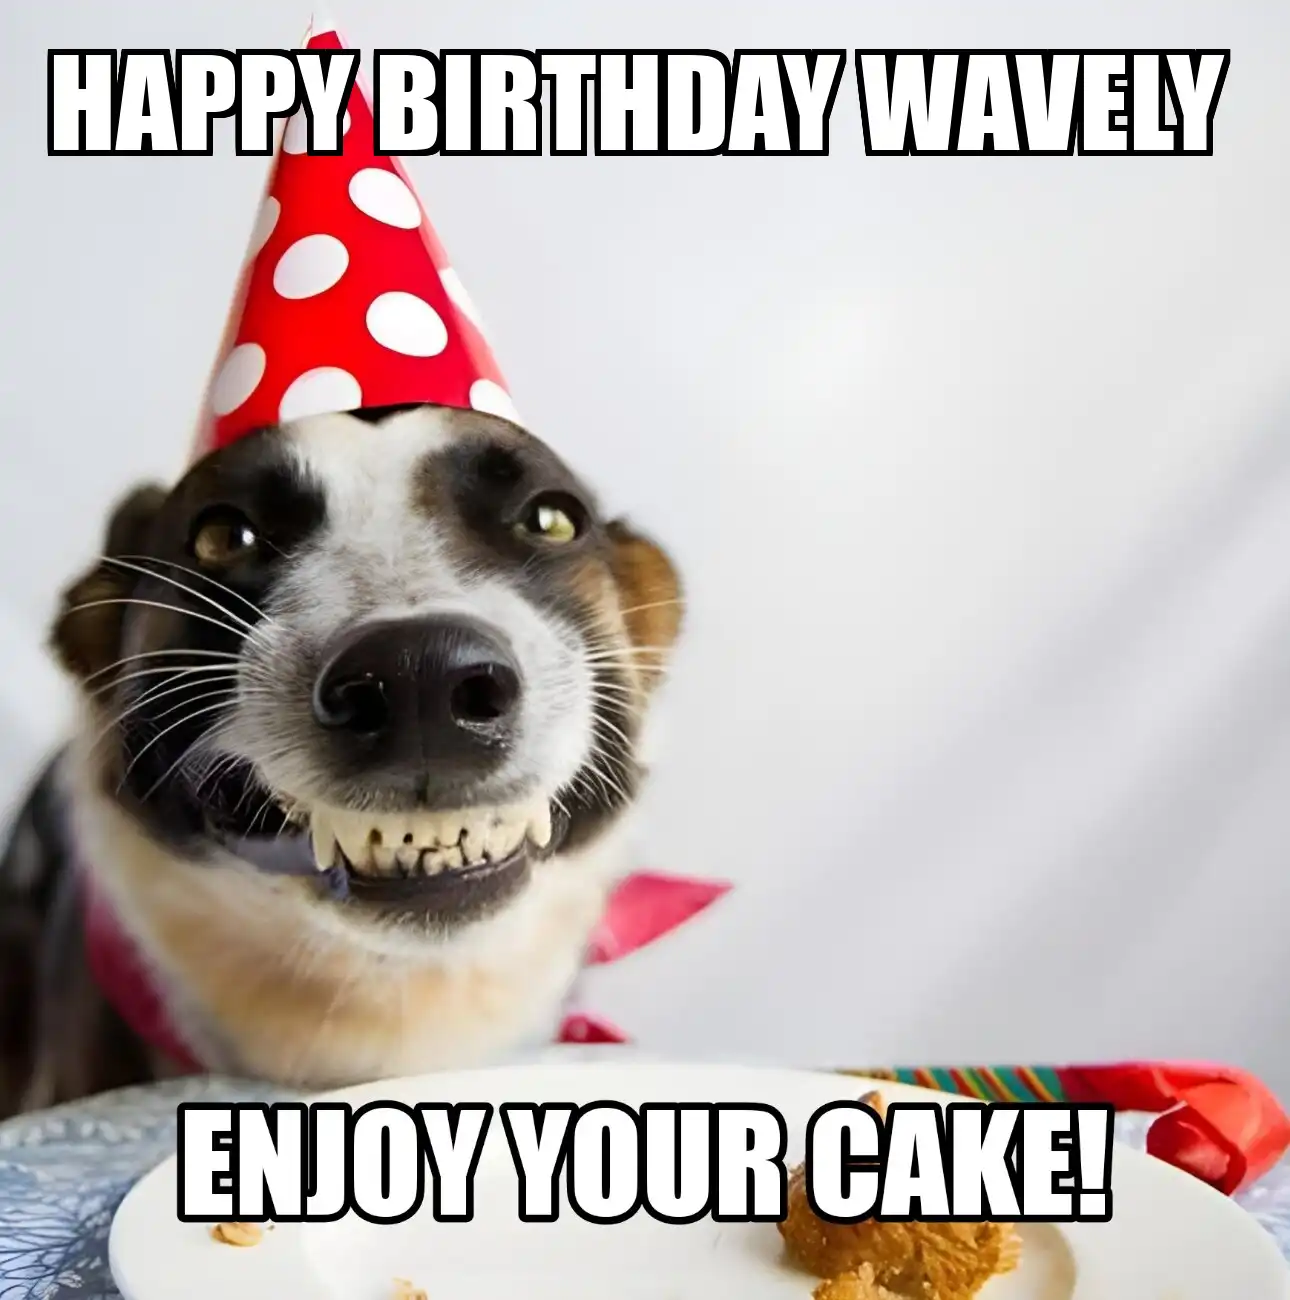 Happy Birthday Wavely Enjoy Your Cake Dog Meme